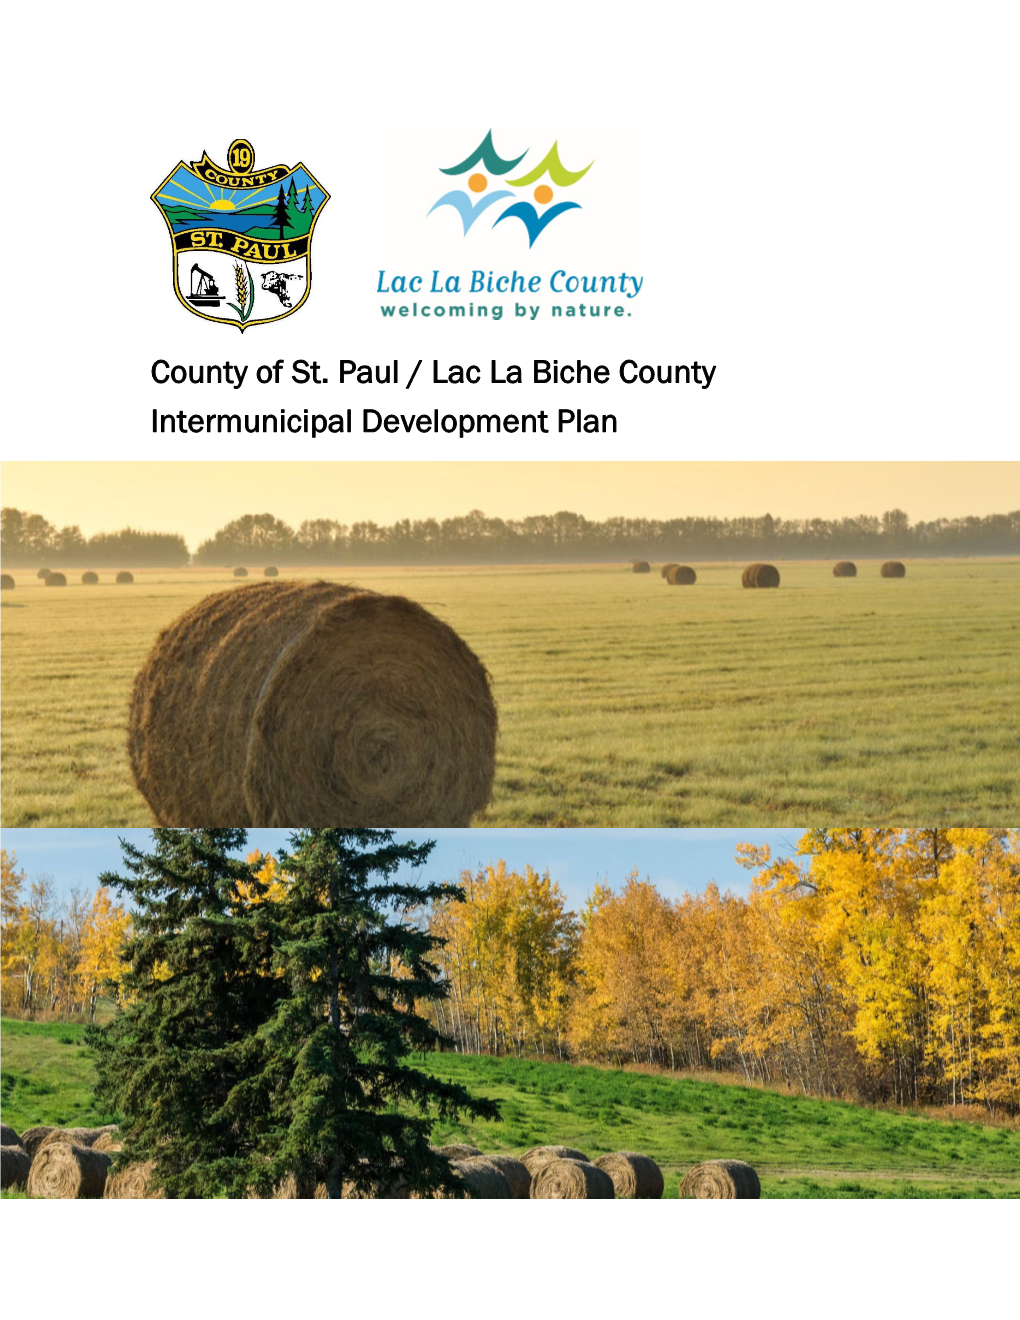 County of St. Paul / Lac La Biche County Intermunicipal Development Plan